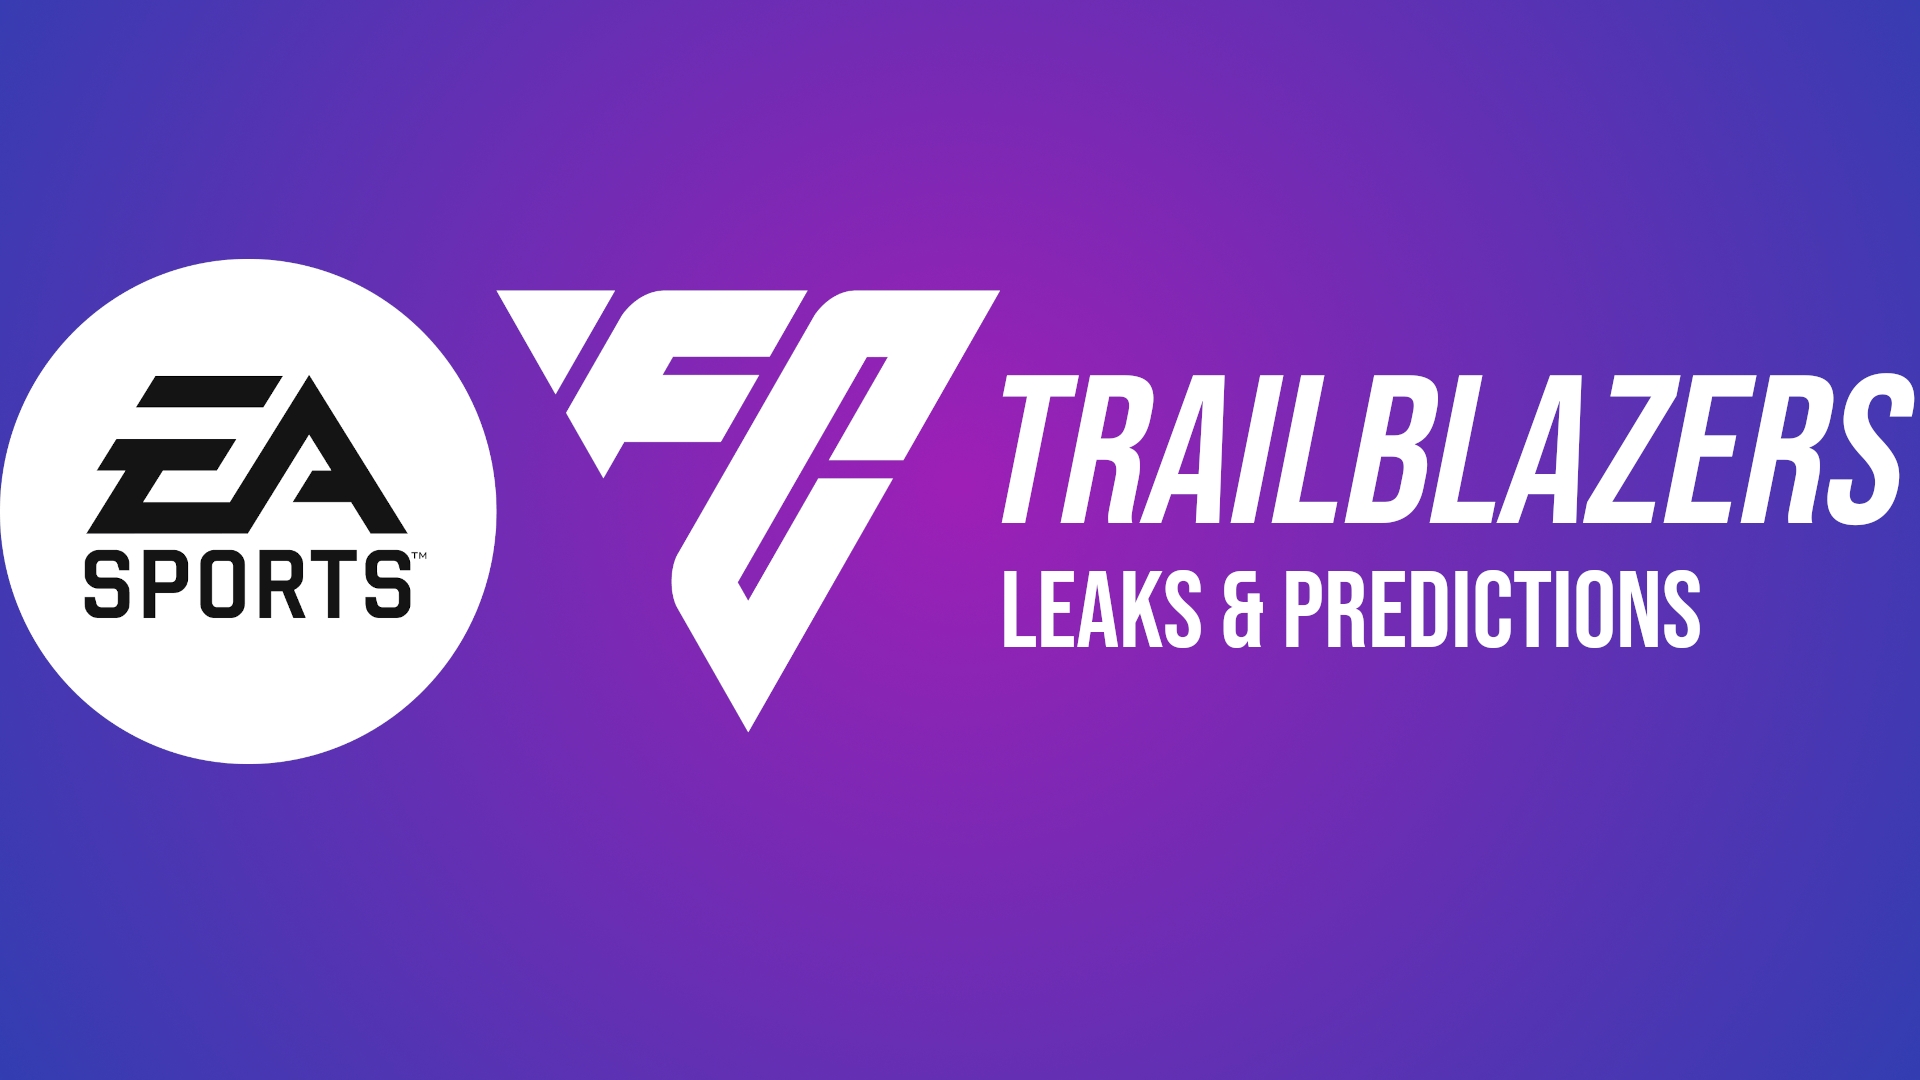 All EA FC 24 Trailblazers leaks featuring Kylian Mbappe